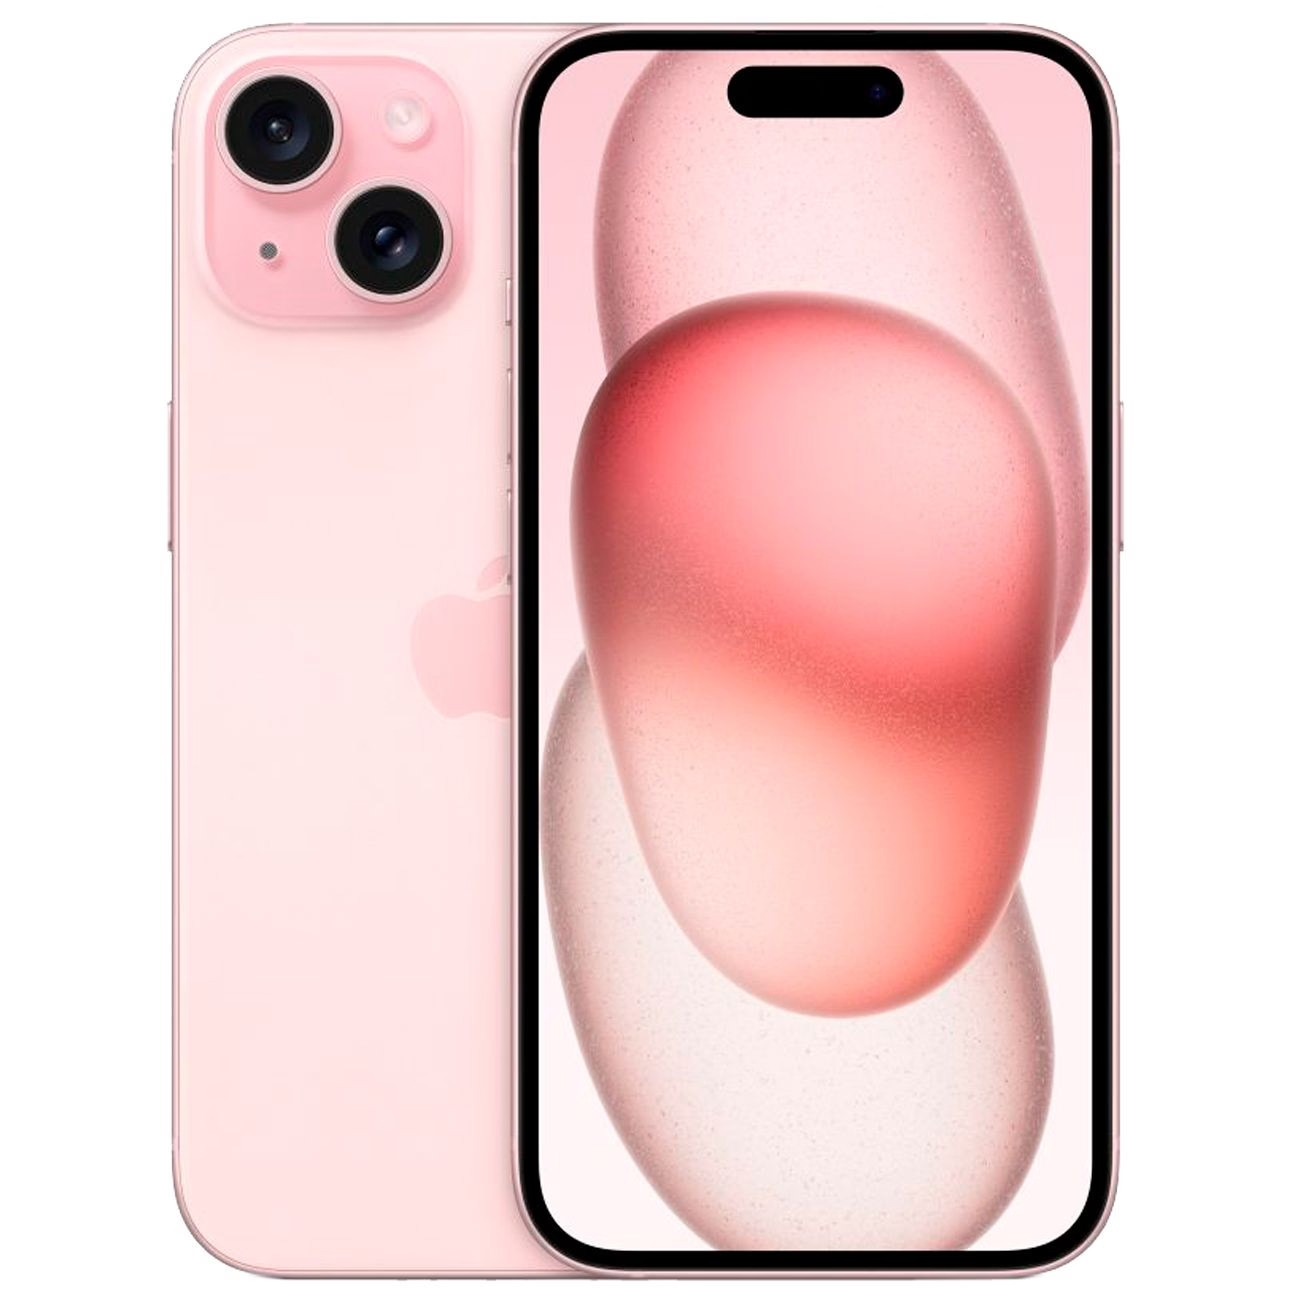 Купить смартфон apple iphone 15 256gb pink Apple iPhone 15 в официальном магазине Apple, Samsung, Xiaomi. iPixel.ru Купить, заказ, кредит, рассрочка, отзывы,  характеристики, цена,  фотографии, в подарок.